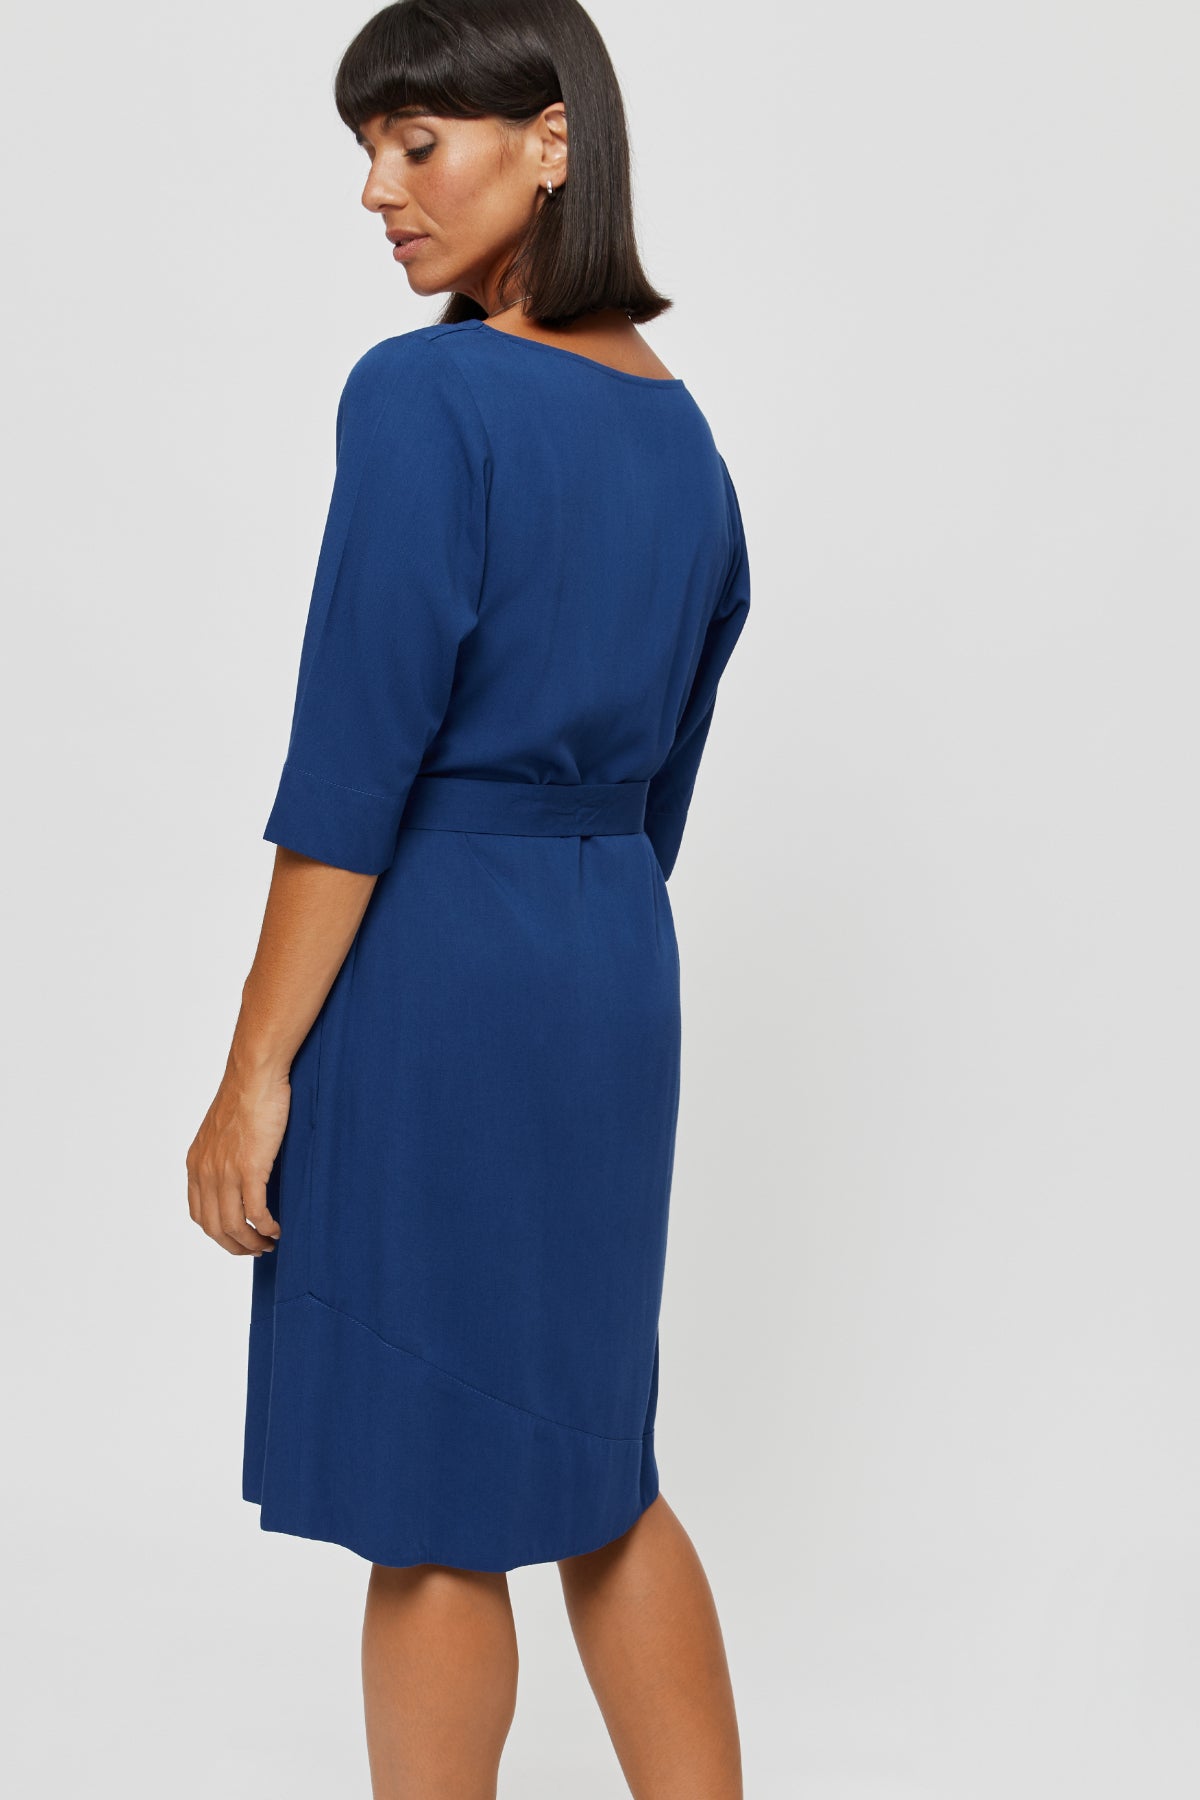 Blaues Kleid Catherine aus 100% Viskose von Ayani